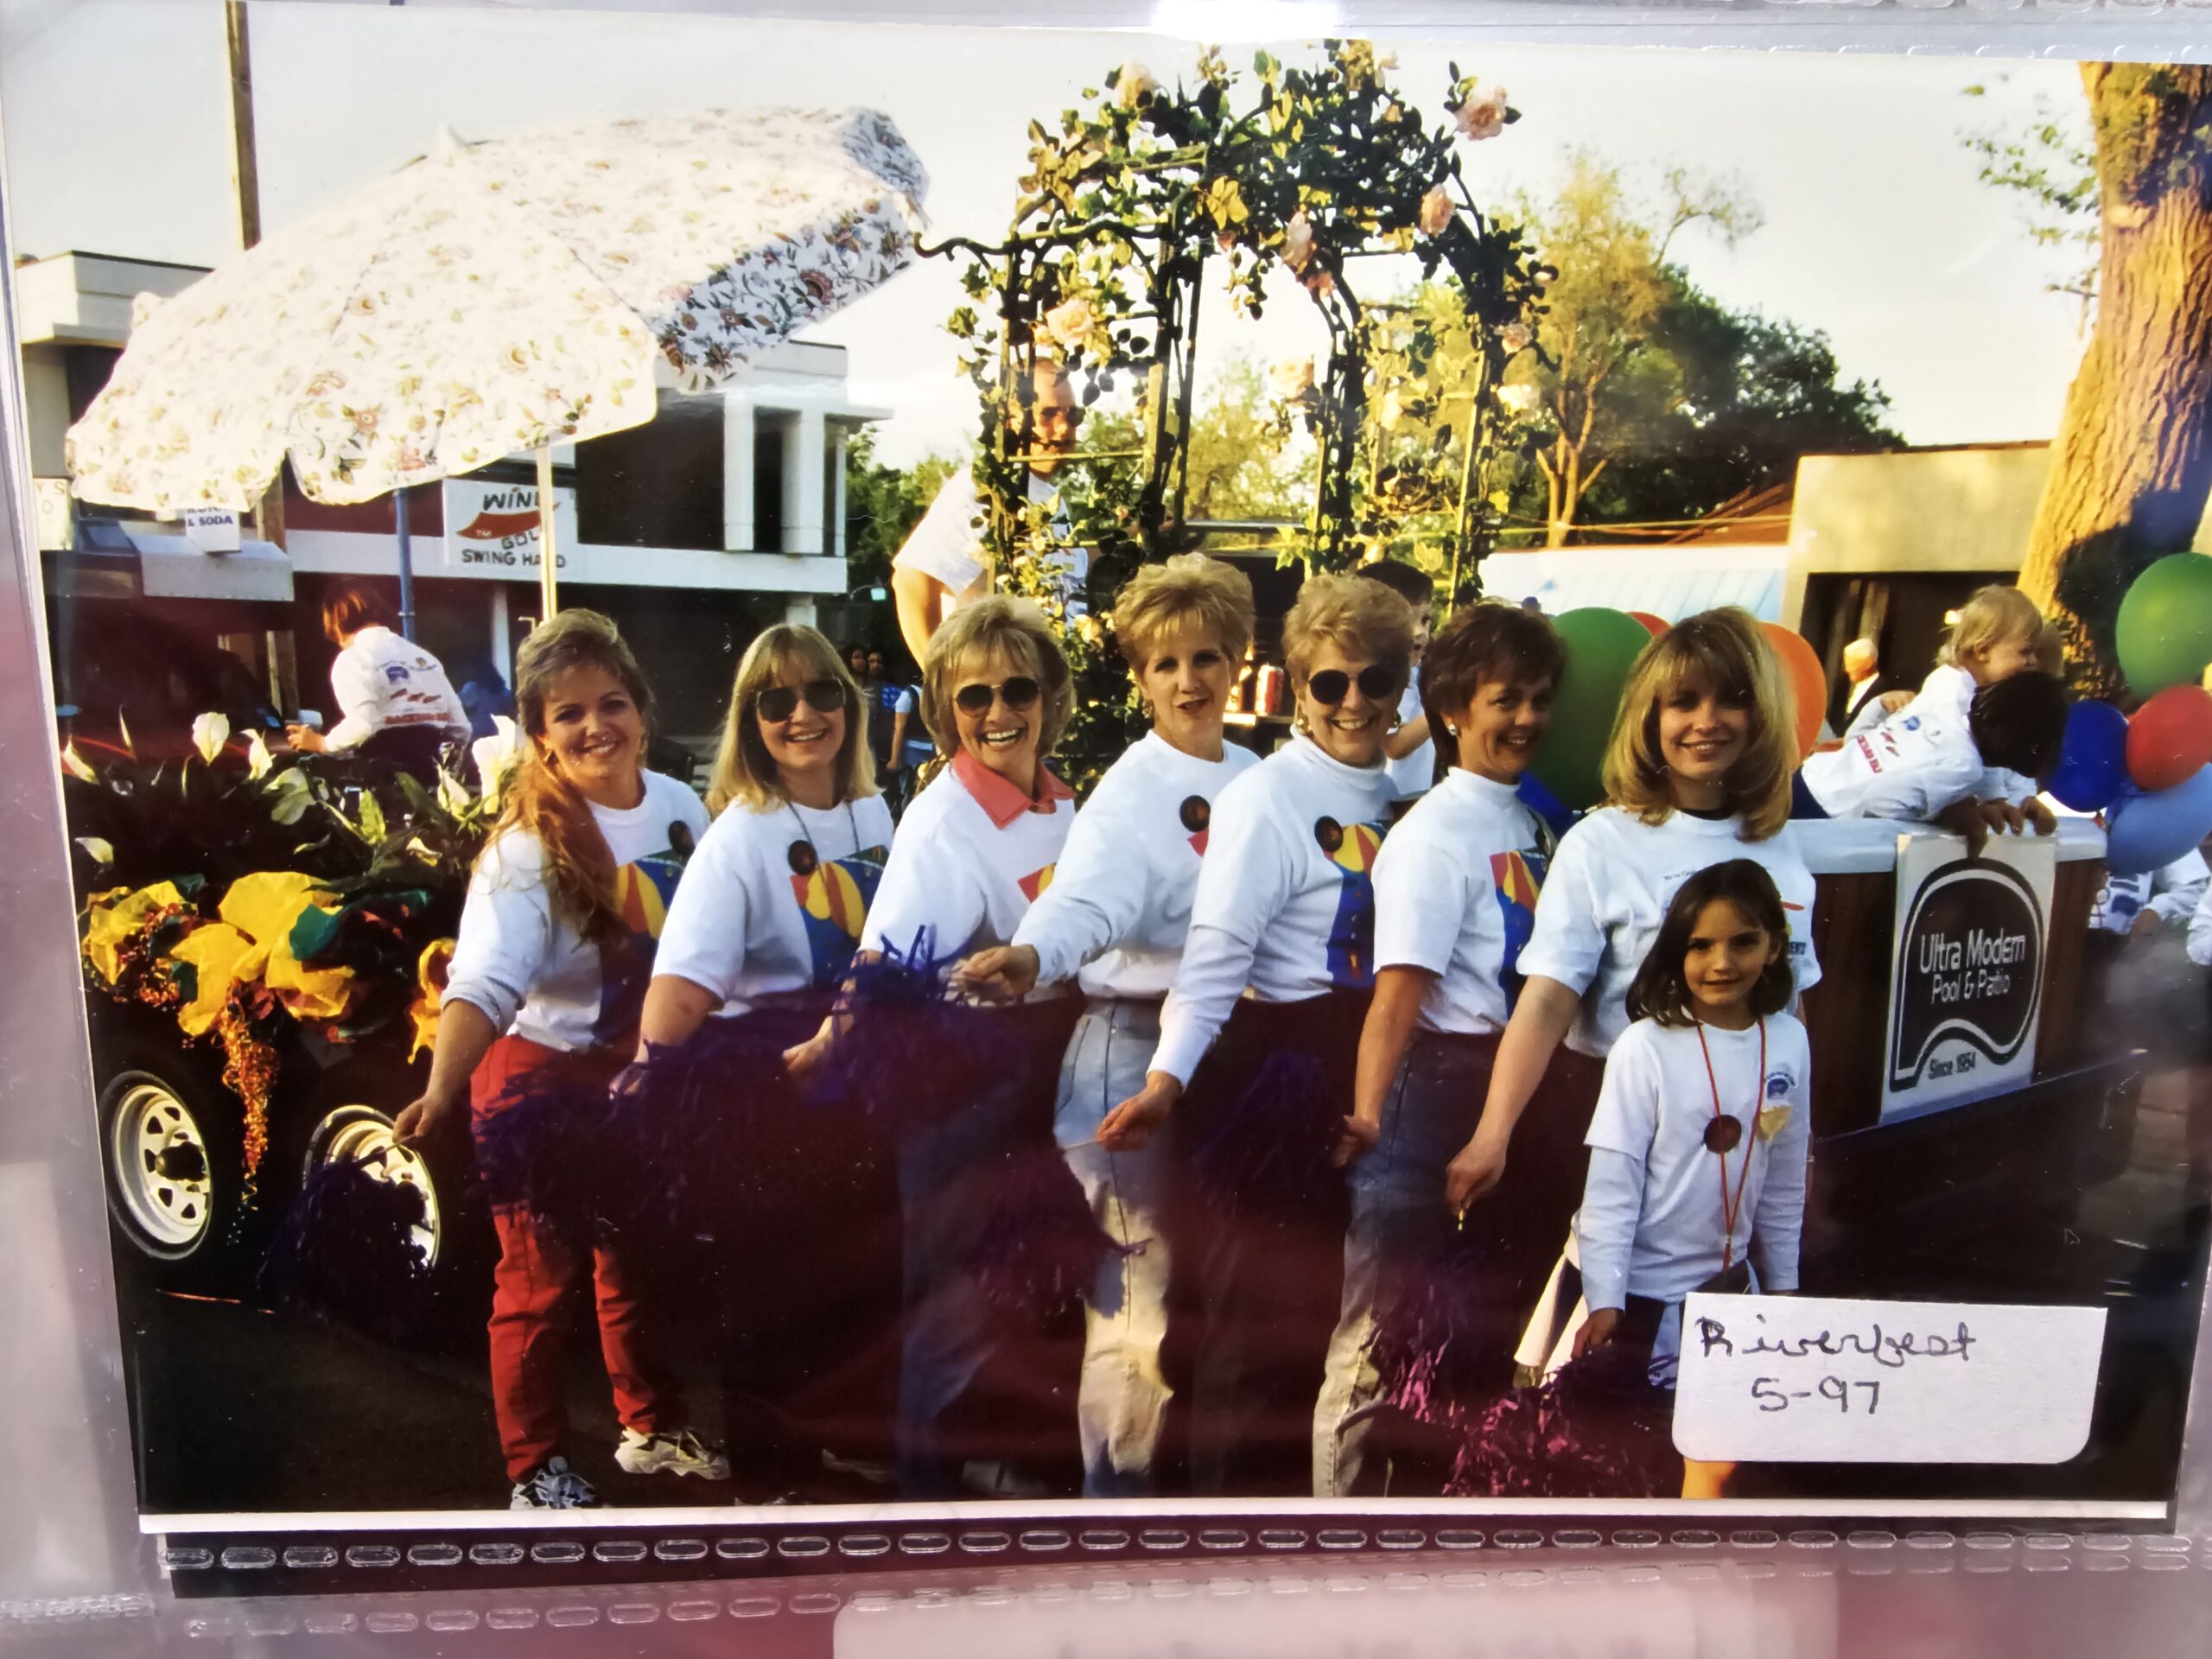 RiverFest 1997 - Kara is on the far right.